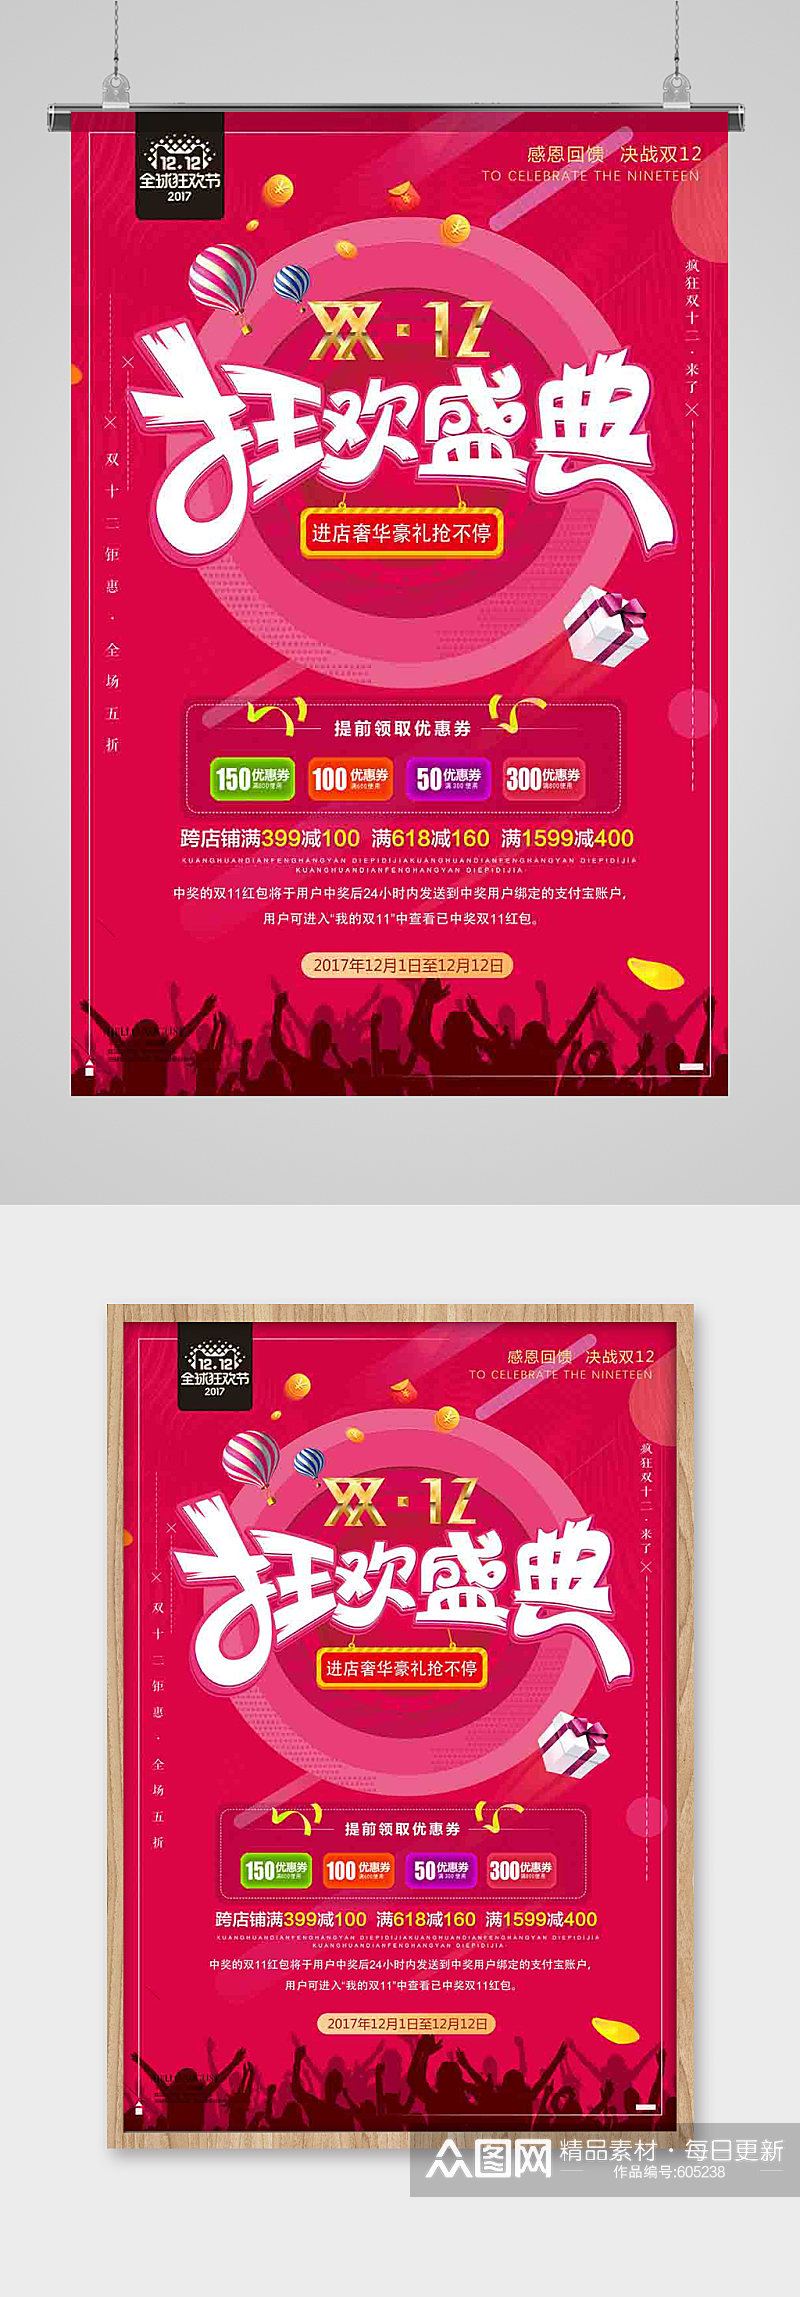 双十二购物狂欢节促销海报网店庆典天猫淘宝素材